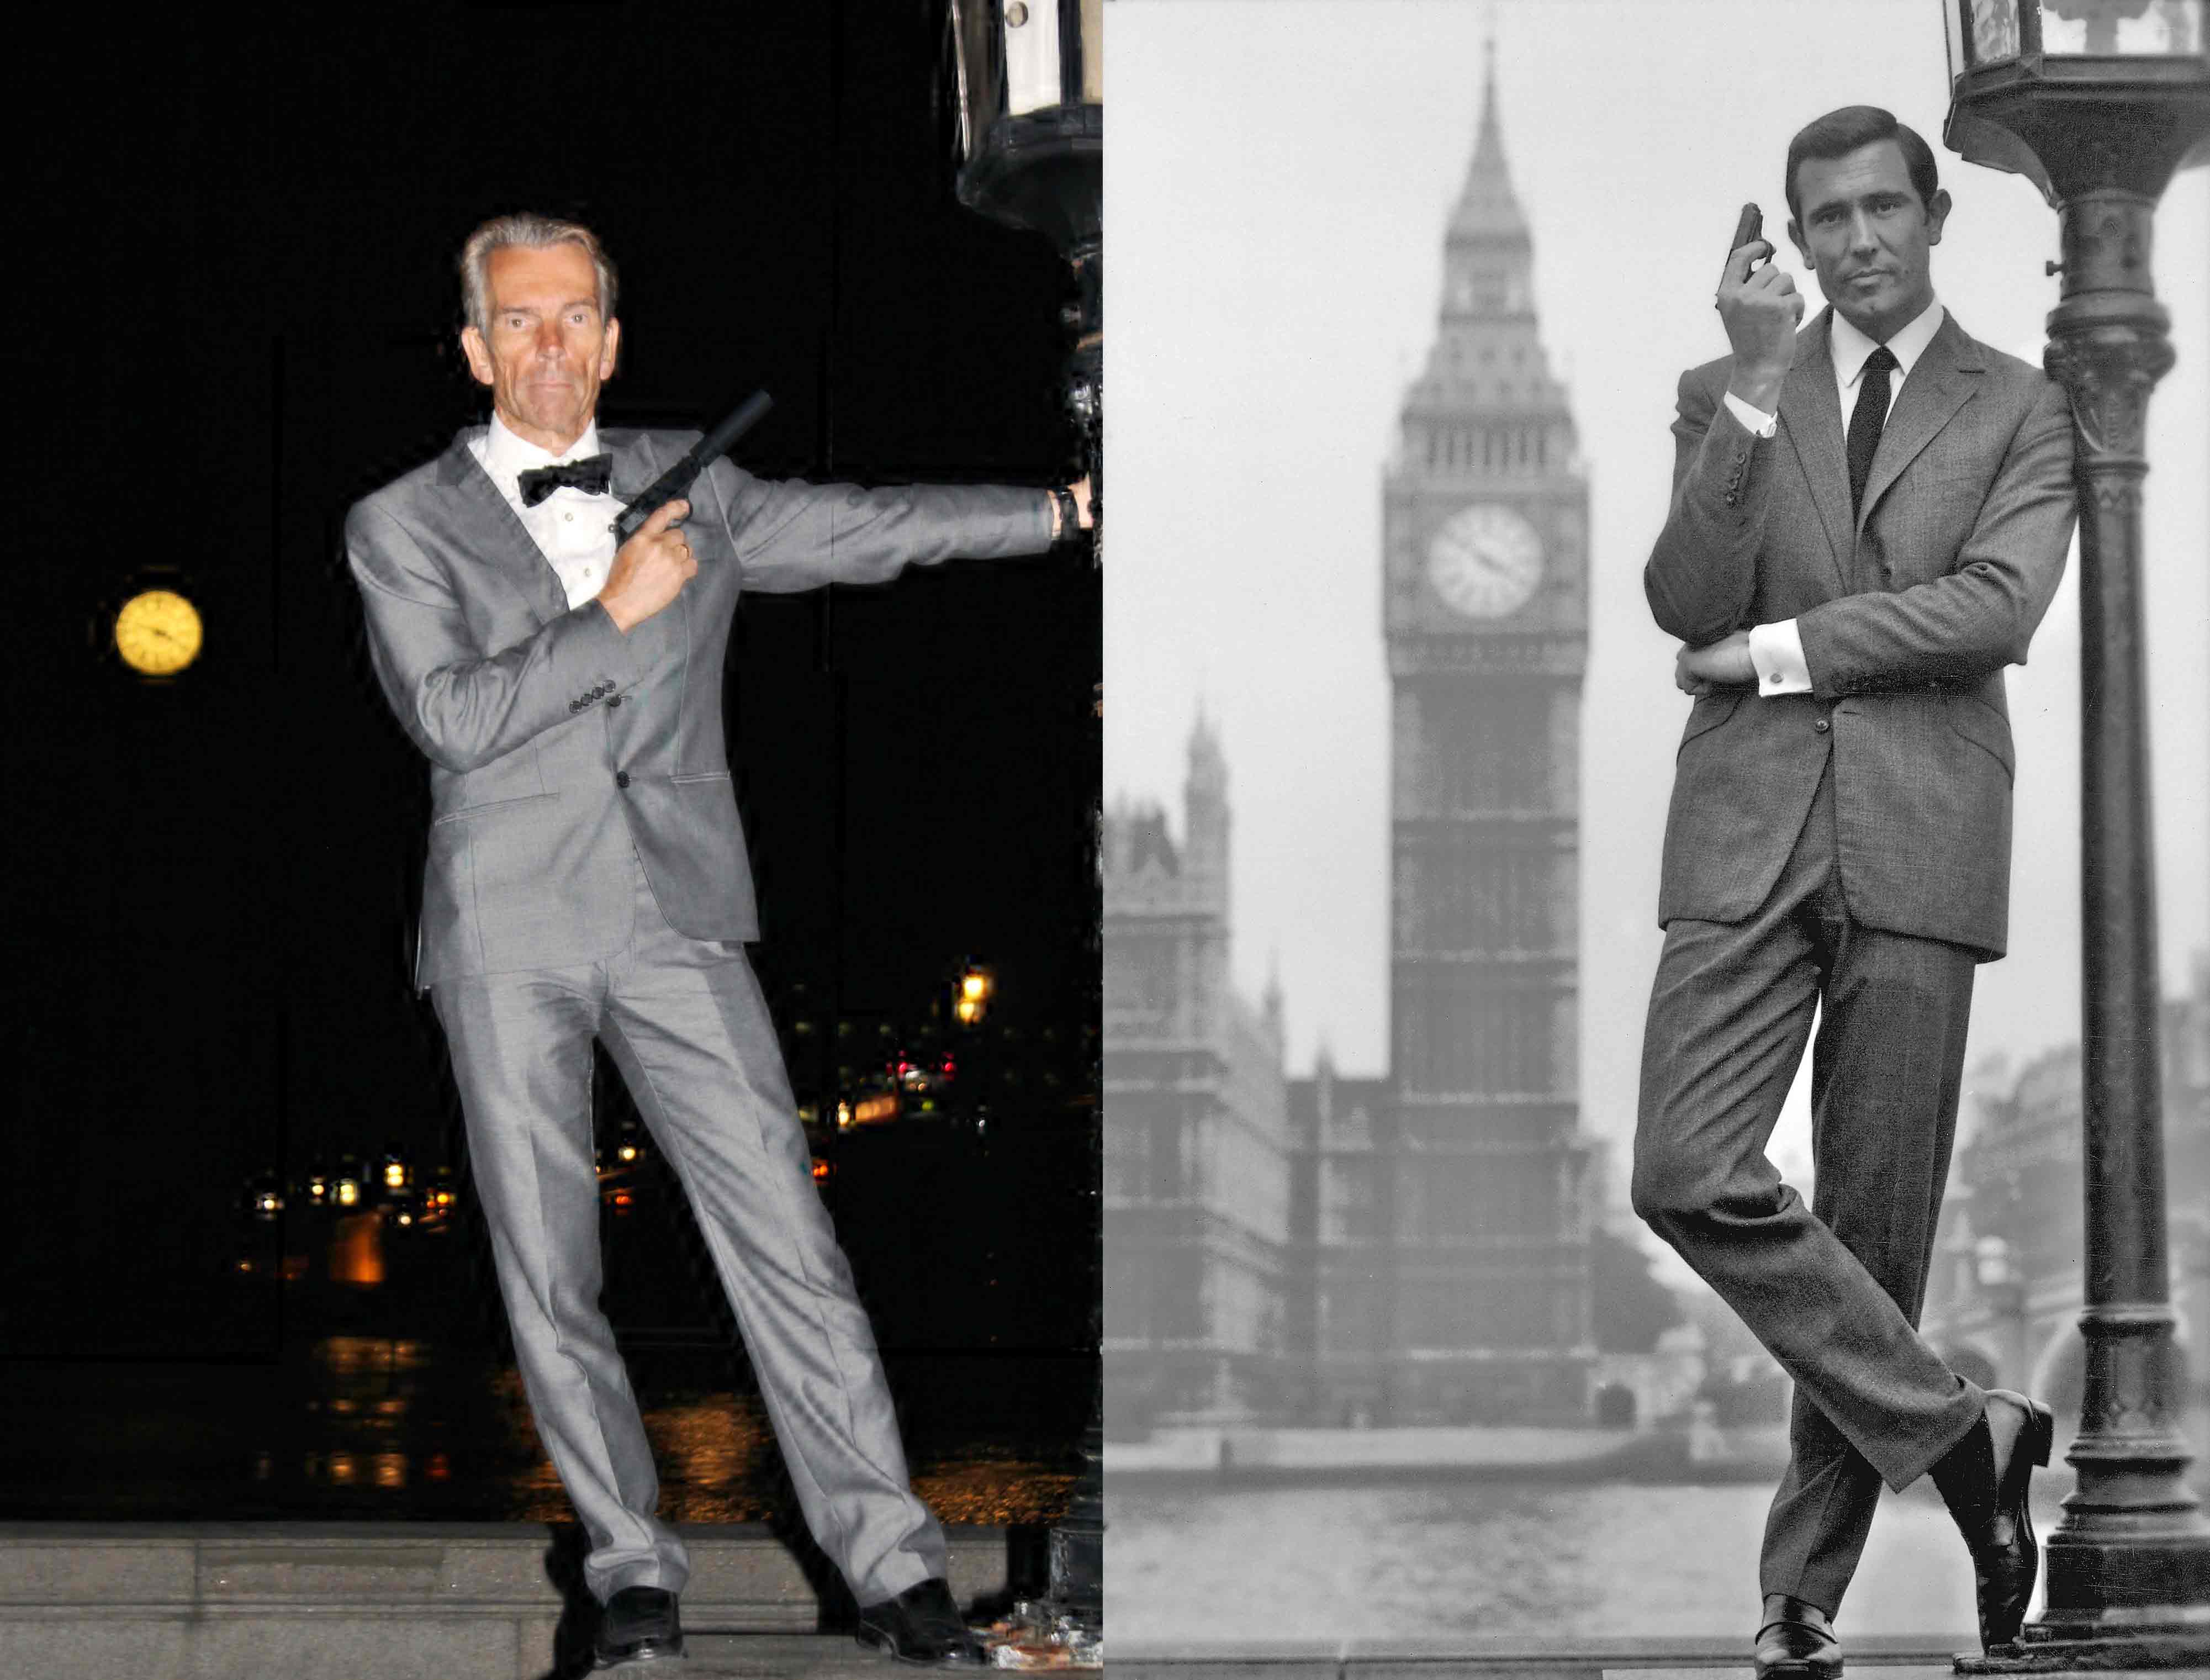 Gunnar Schäfer James Bond and George Lazenby as James Bond Big Ben London